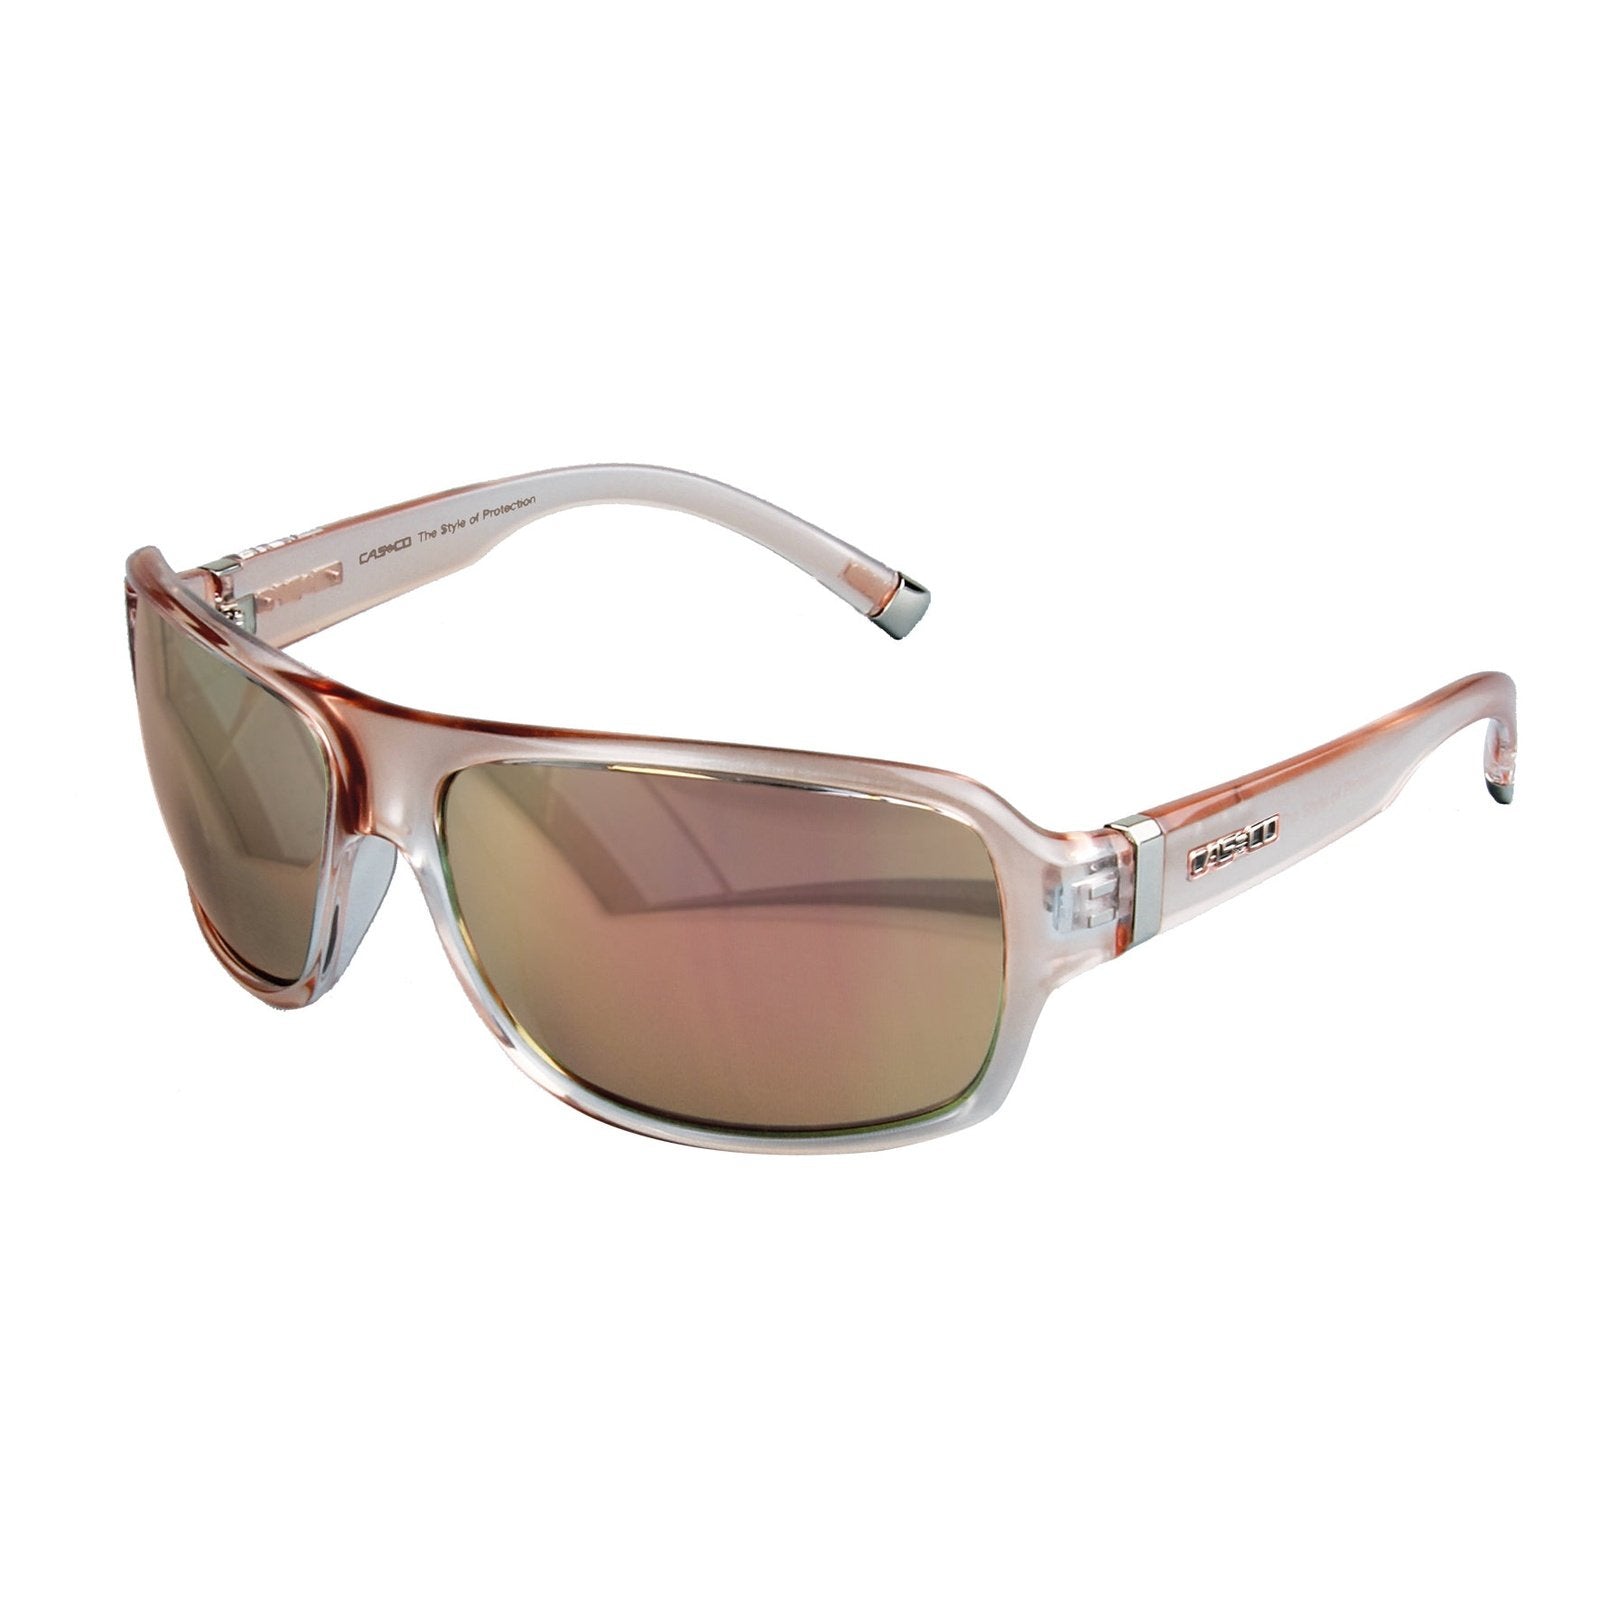 UVEX edle Sportbrille / Sonnenbrille im Freizeitdisign Crystal rose SX-61 bei SP-Reitsport